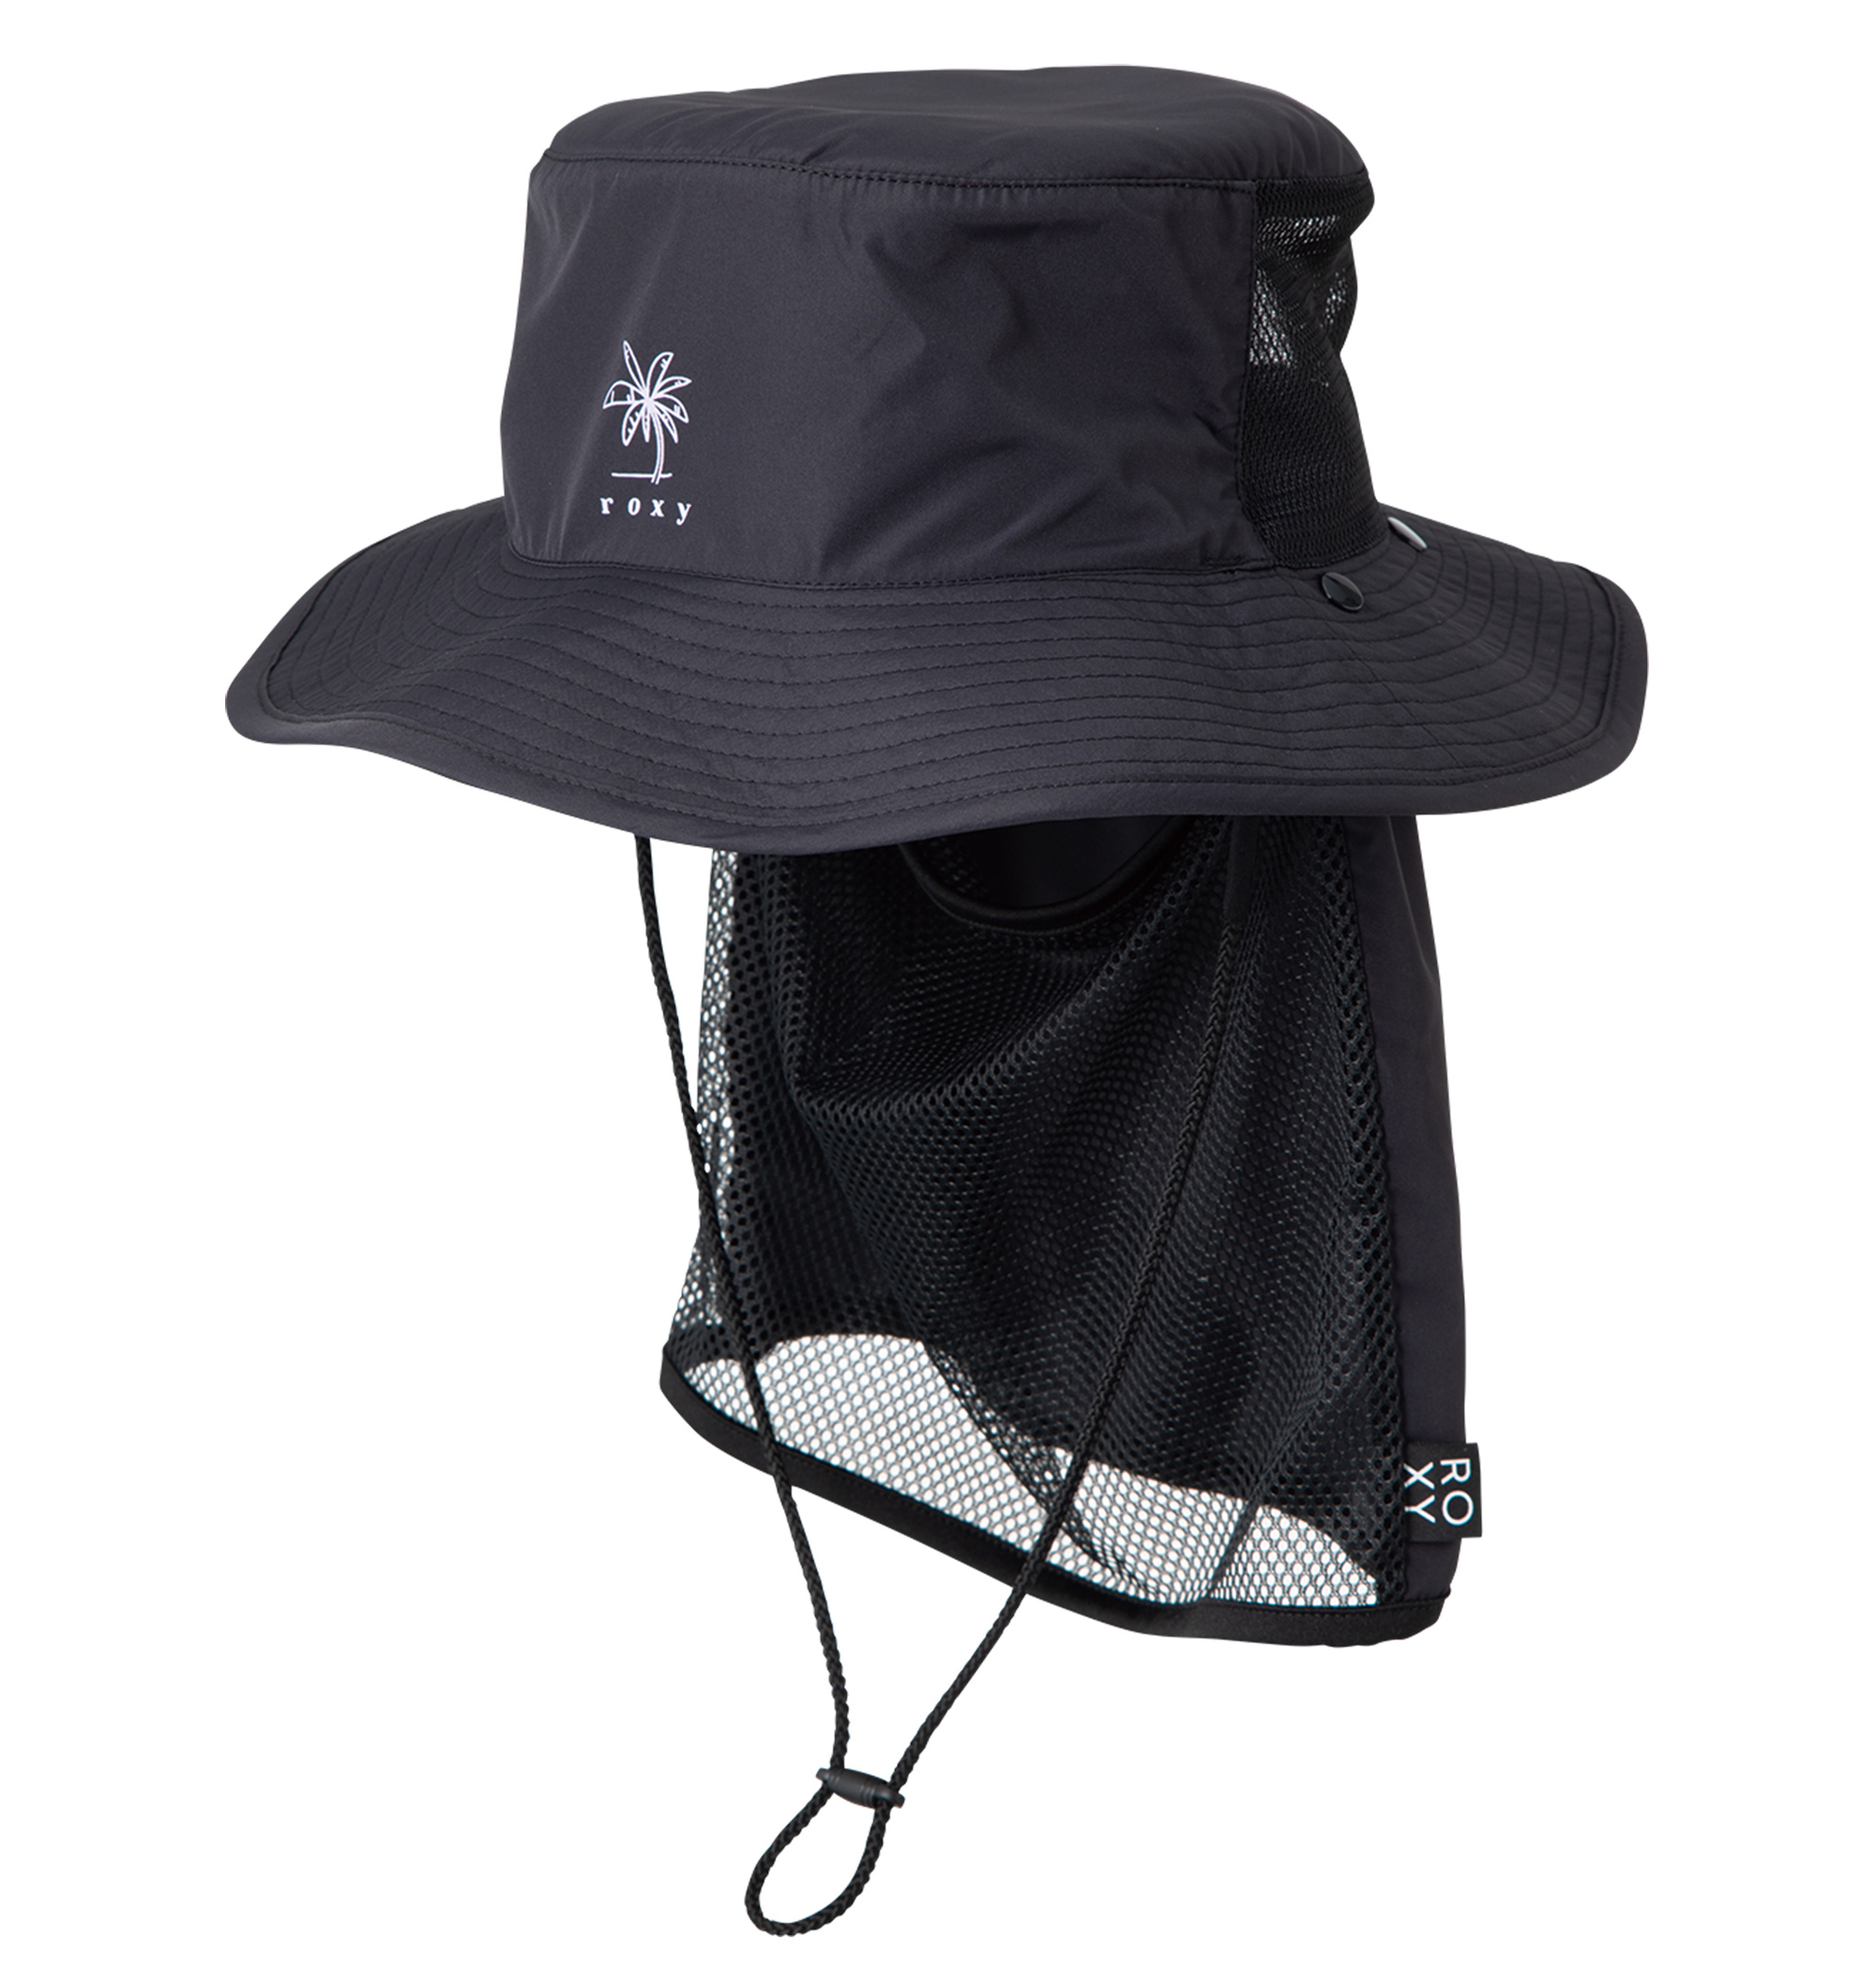 UV SUP CAMP HAT ポリエステル100% UV CUT 撥水加工素材の日焼け防止ハットの画像